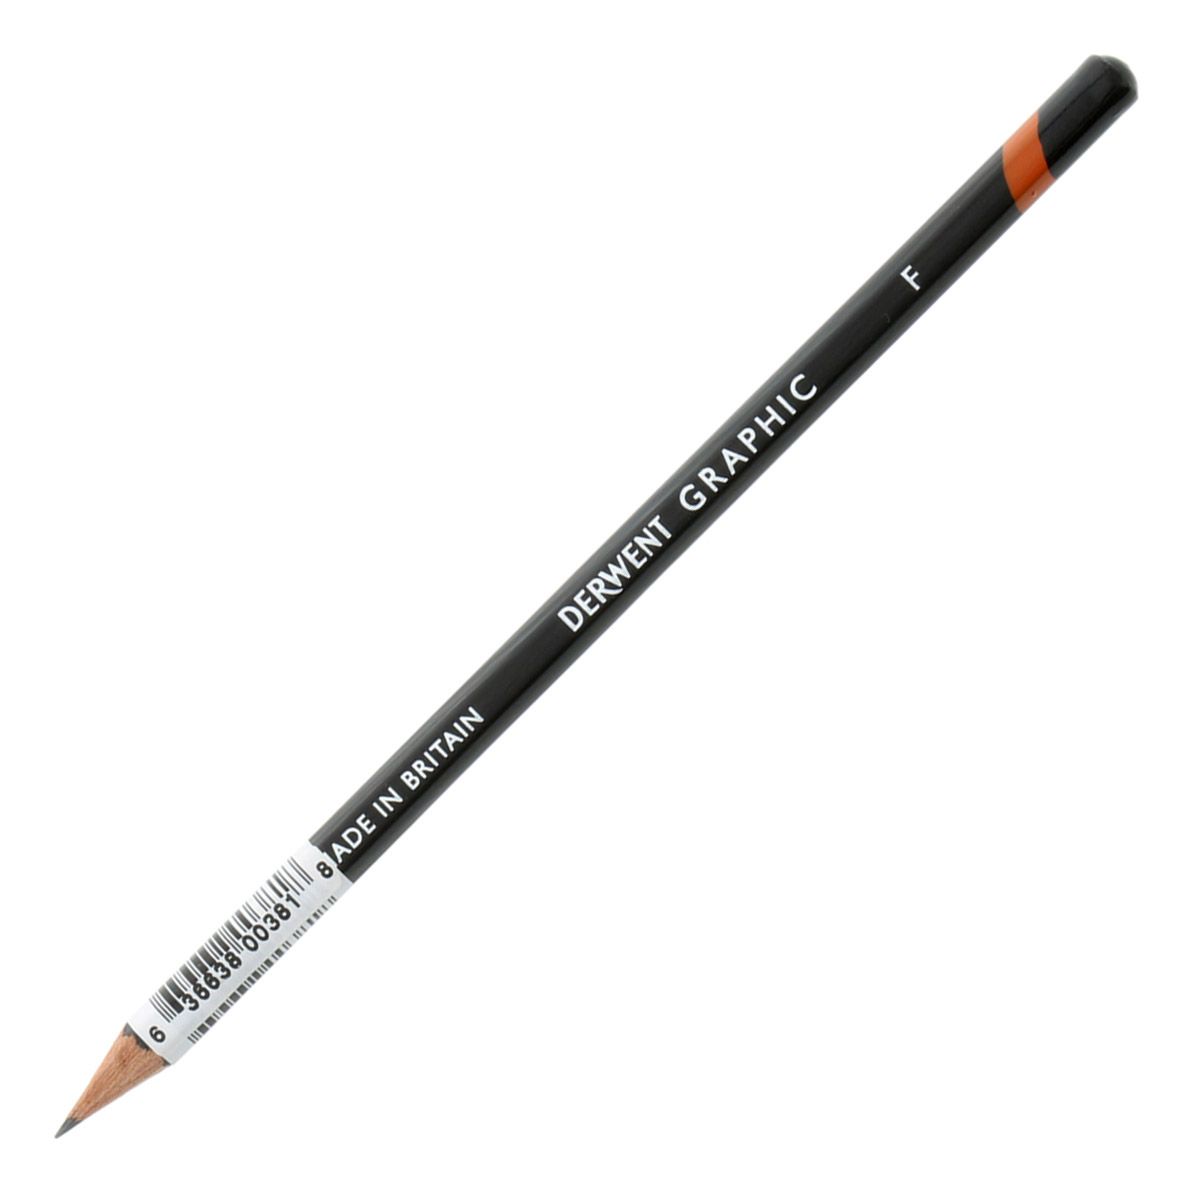 Derwent Graphic Pencil - F